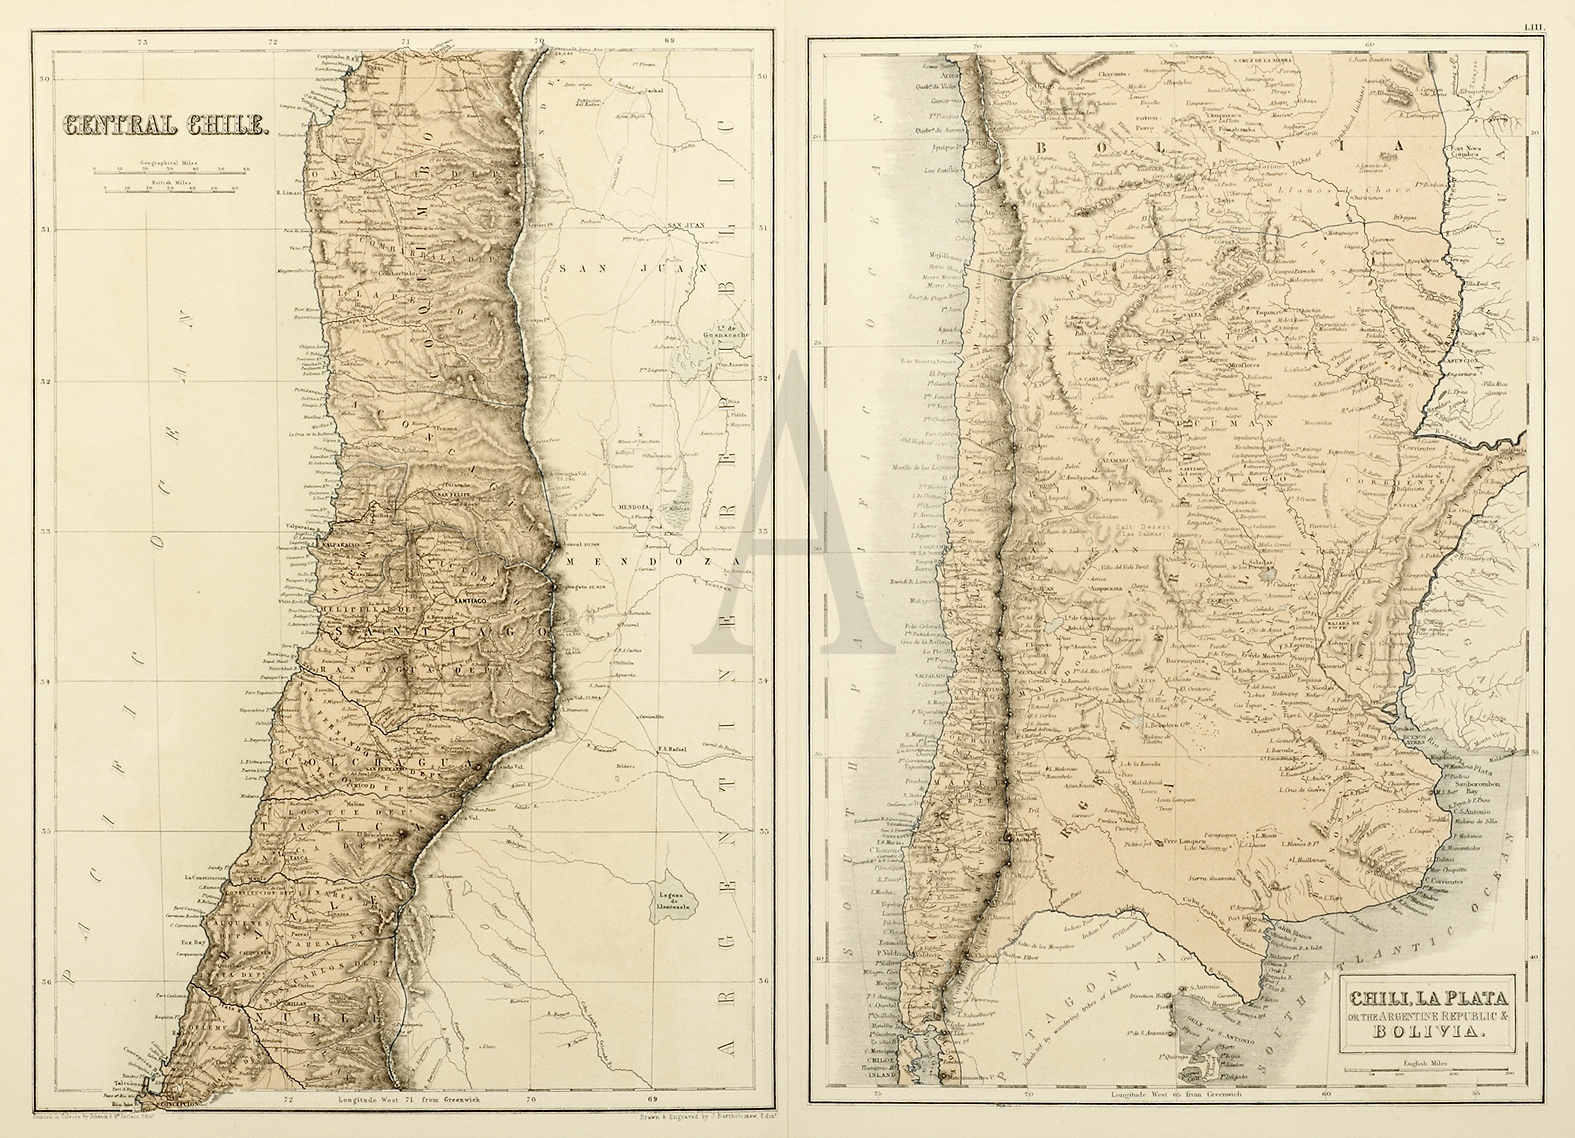 Central Chili. Chilli, La Plata or the Argentine Republic & Bolivia. - Antique Print from 1859